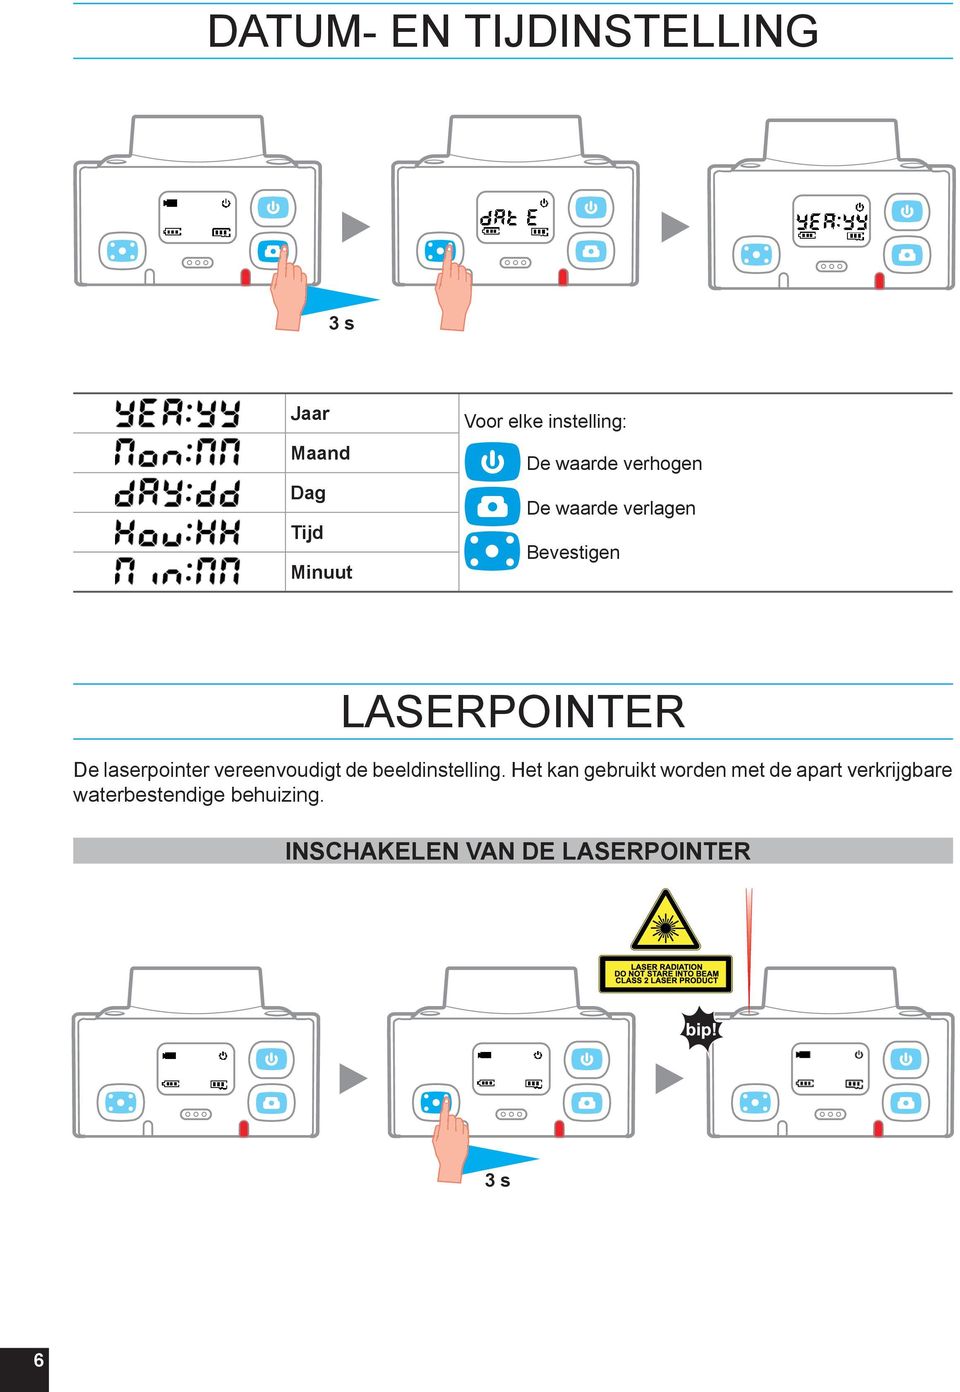 De laserpointer vereenvoudigt de beeldinstelling.